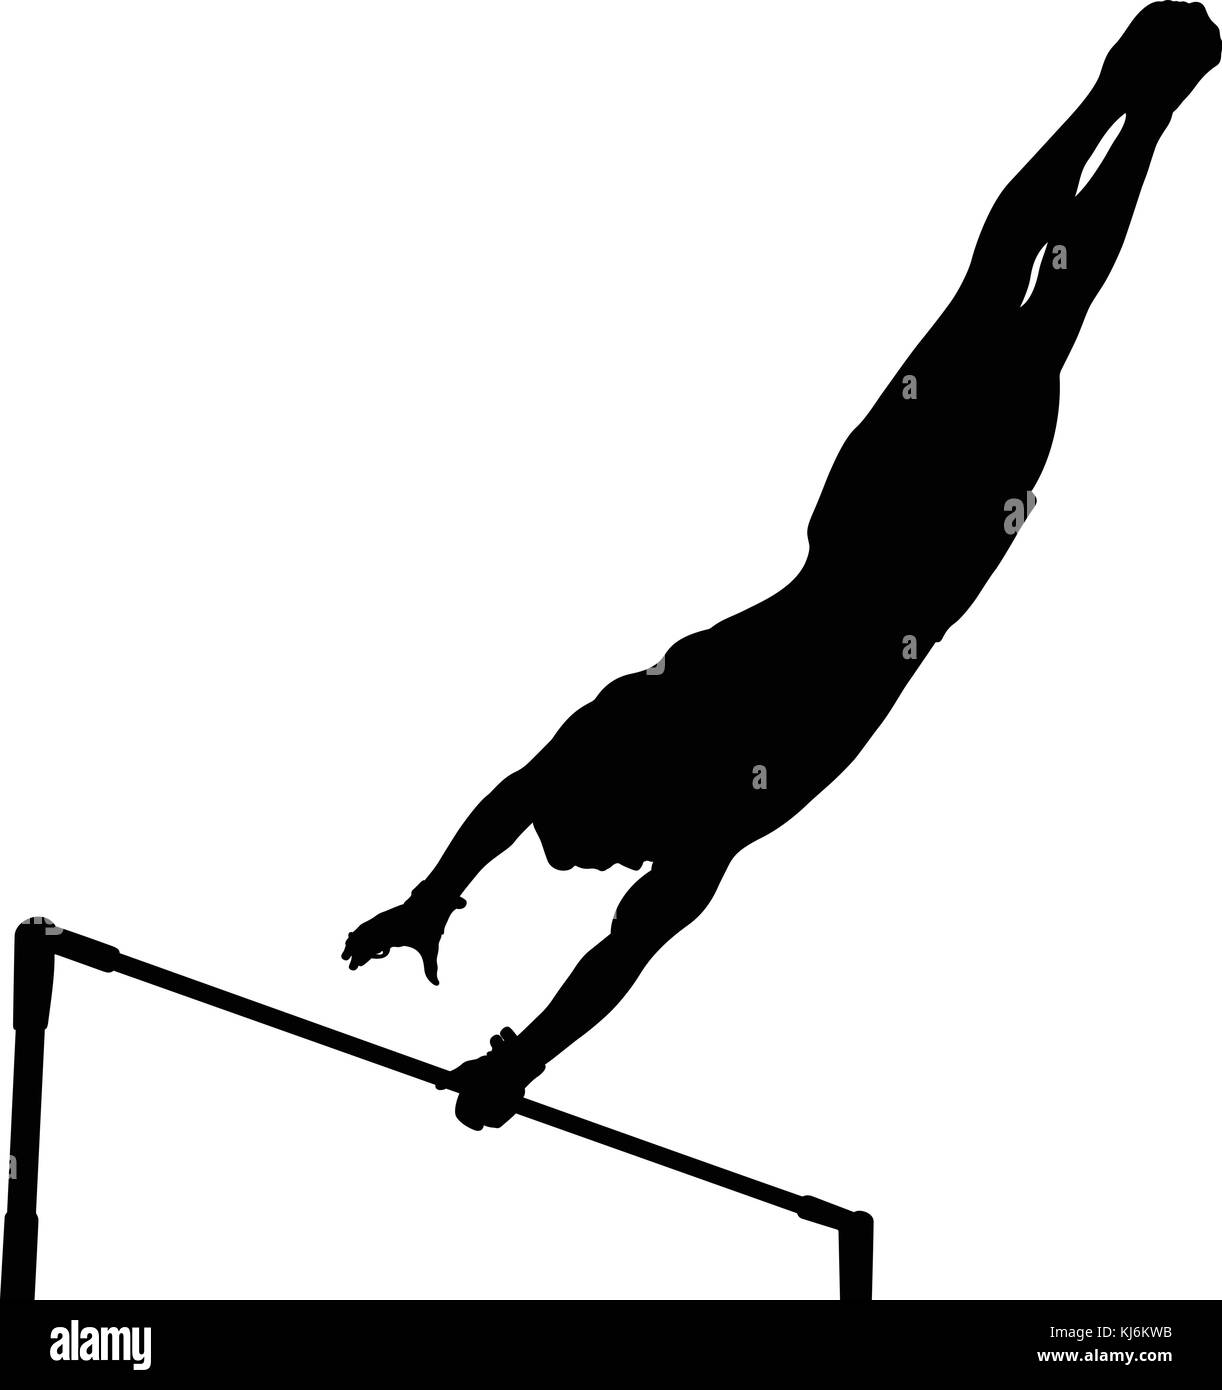 Barre horizontale en gymnastique artistique gymnastique silhouette noire Illustration de Vecteur